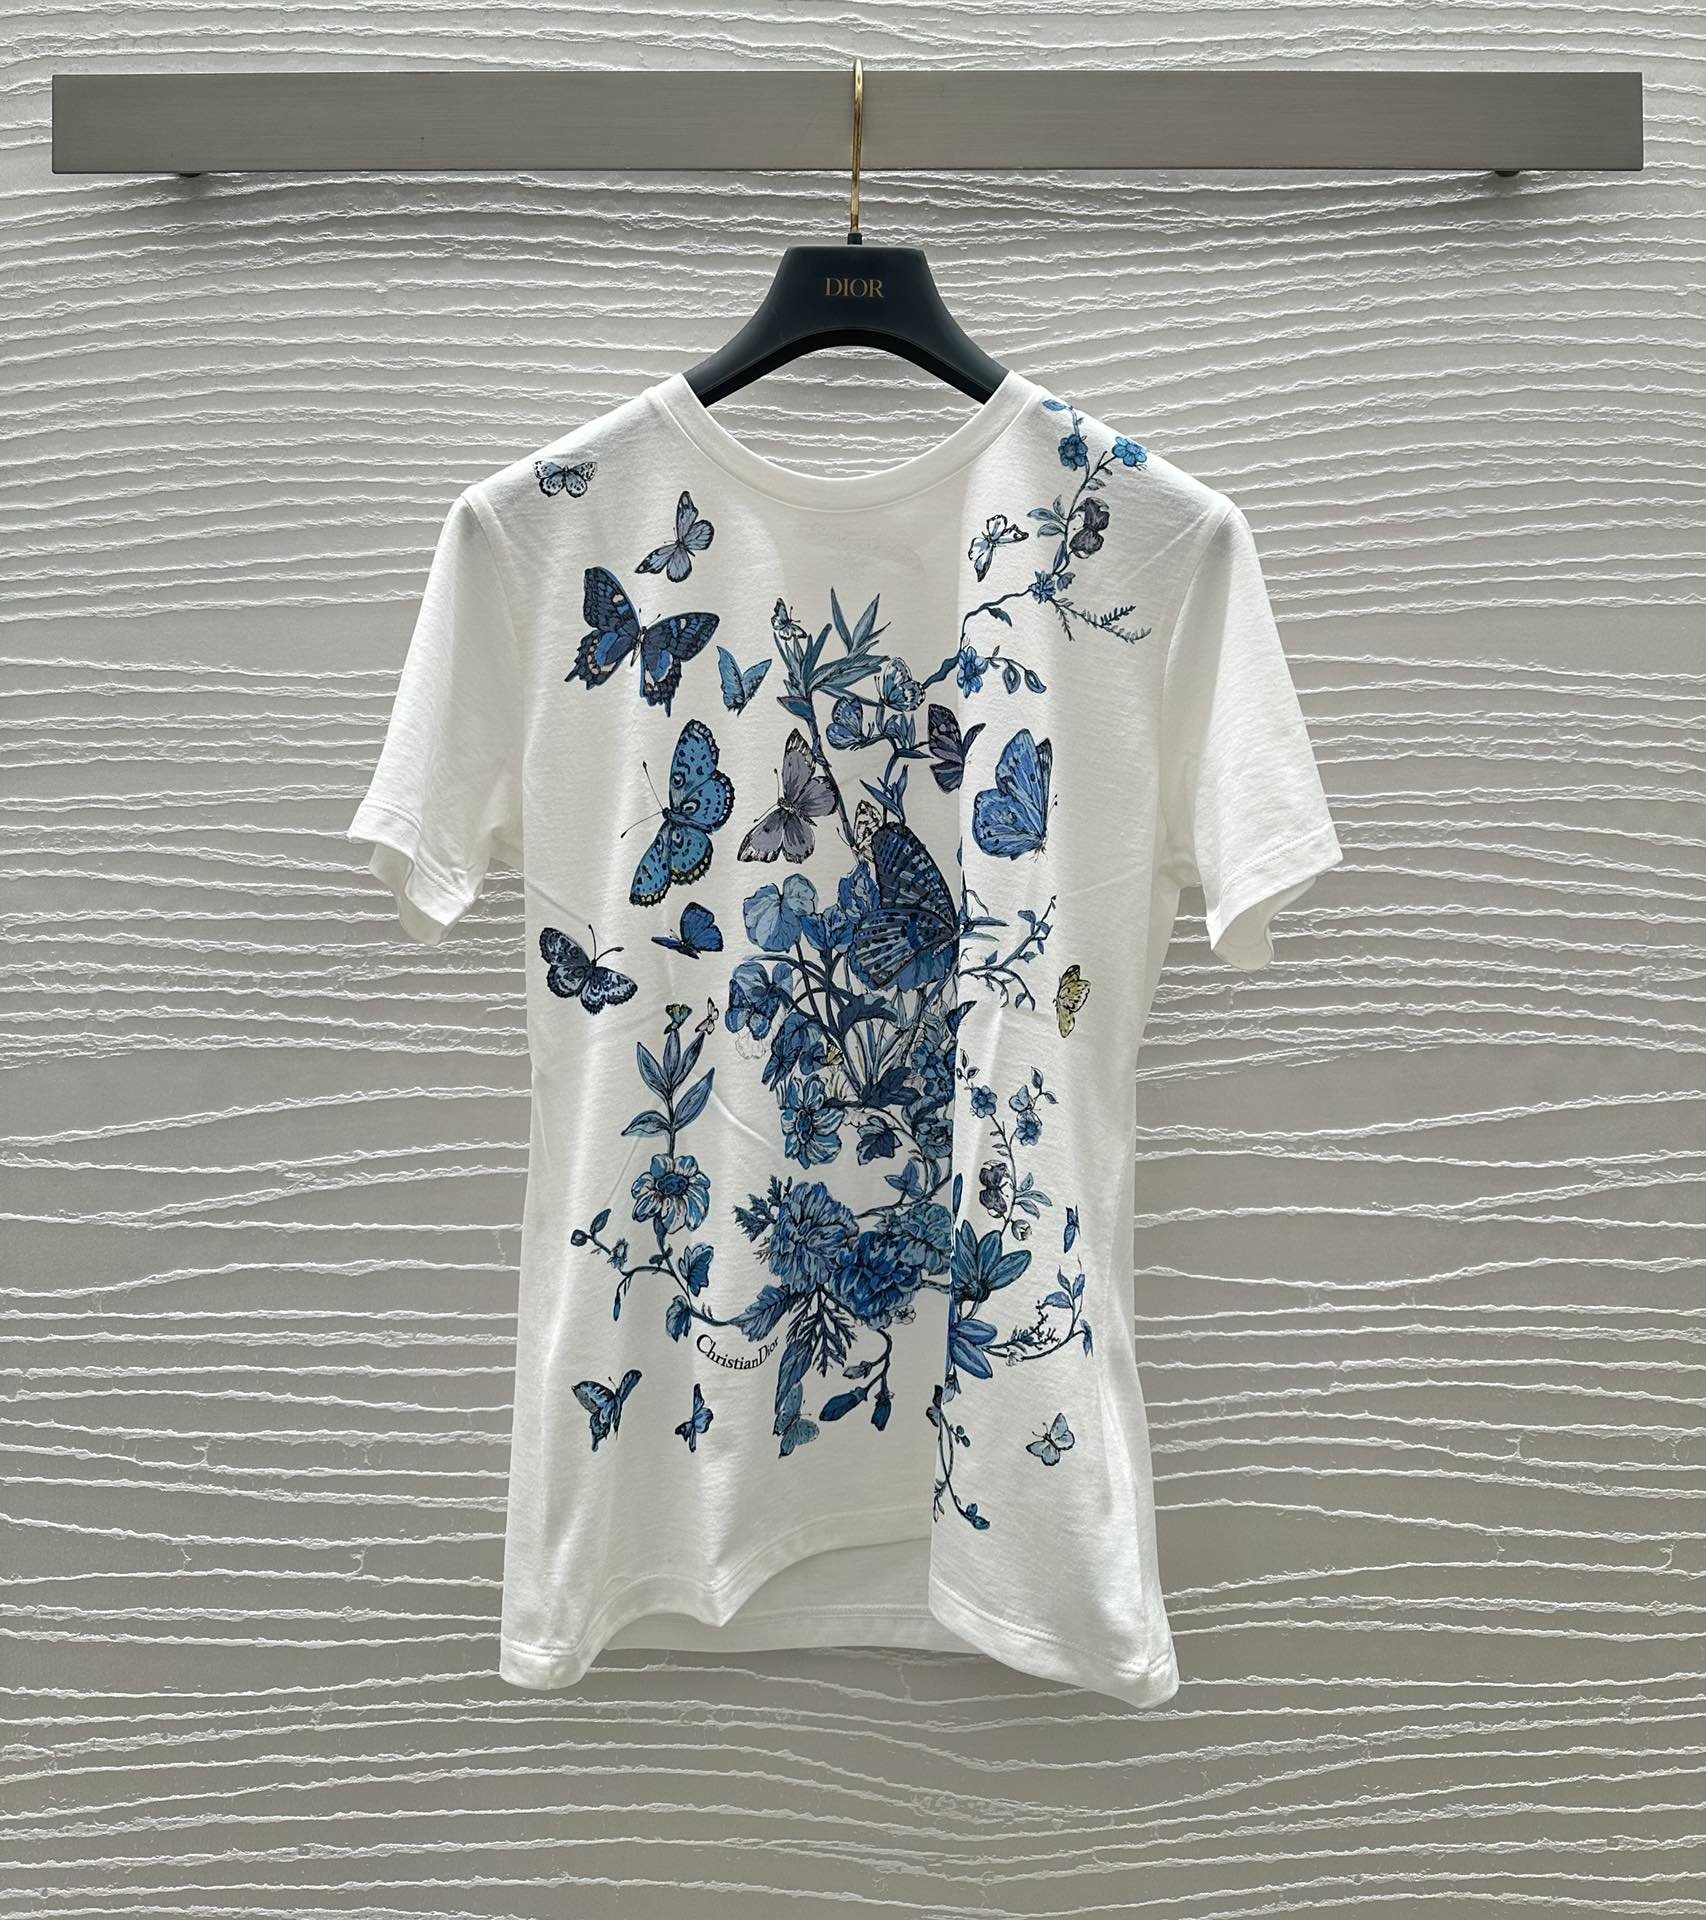 Dio*蝴蝶图案T恤以优雅缤纷的蓝调配色淡雅显气质蝴蝶环绕立体显相美妙风彩经典圆领设计采用纯棉面料制作柔